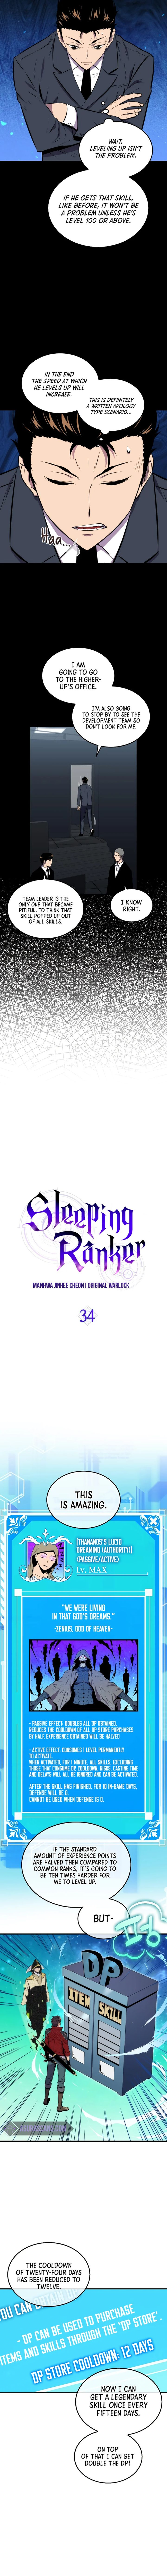 Sleeping Ranker 34 4